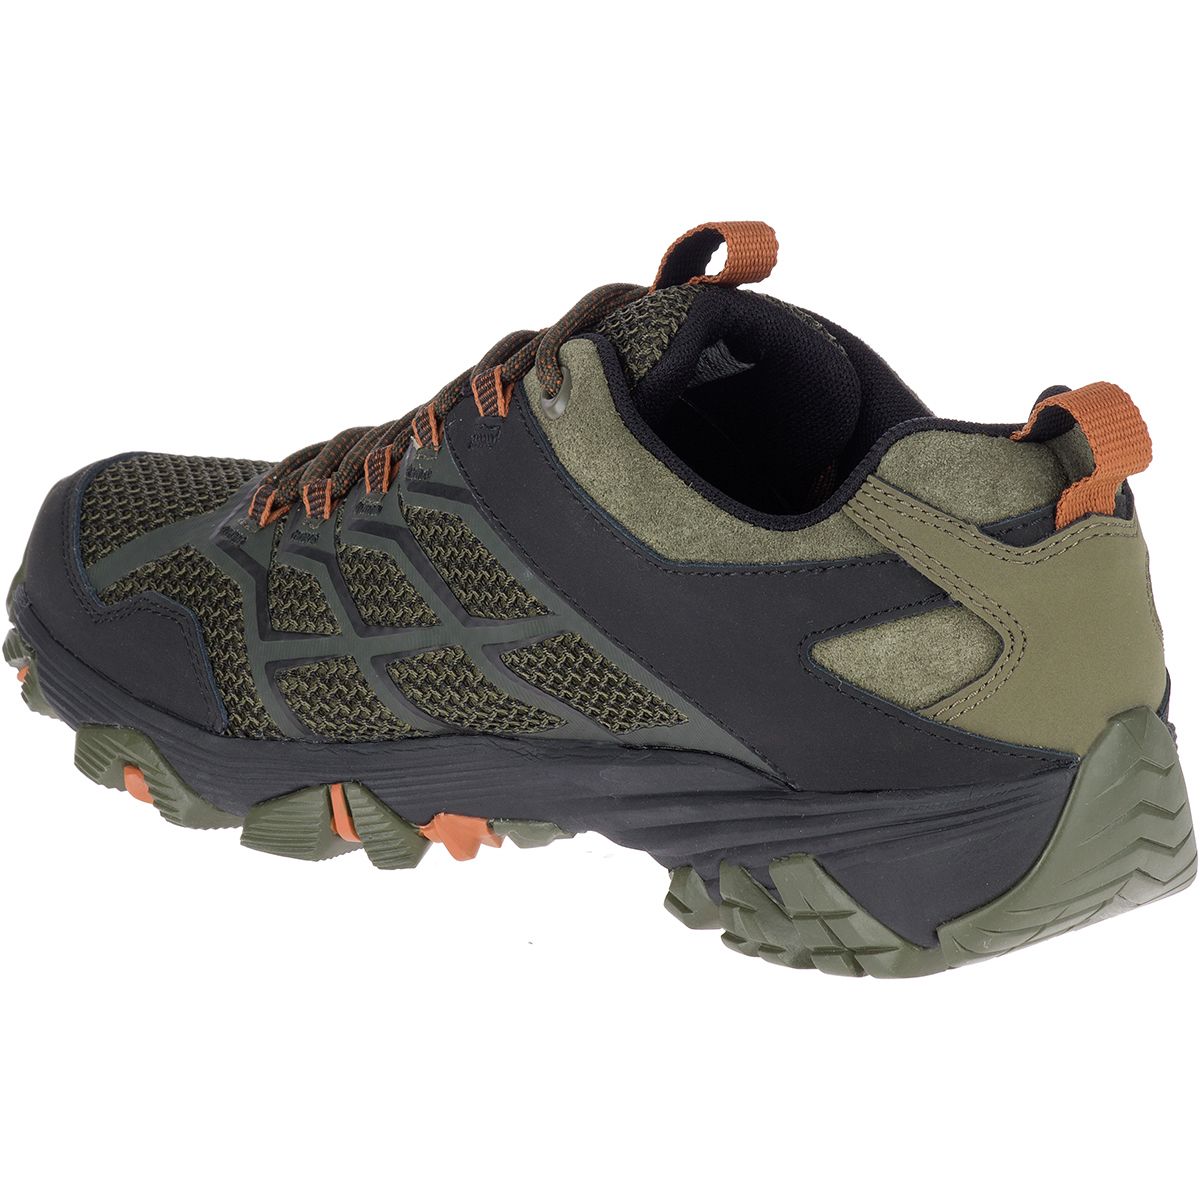 Merrell Moab FST 2 Waterproof Hiking Boot - Men's - Footwear